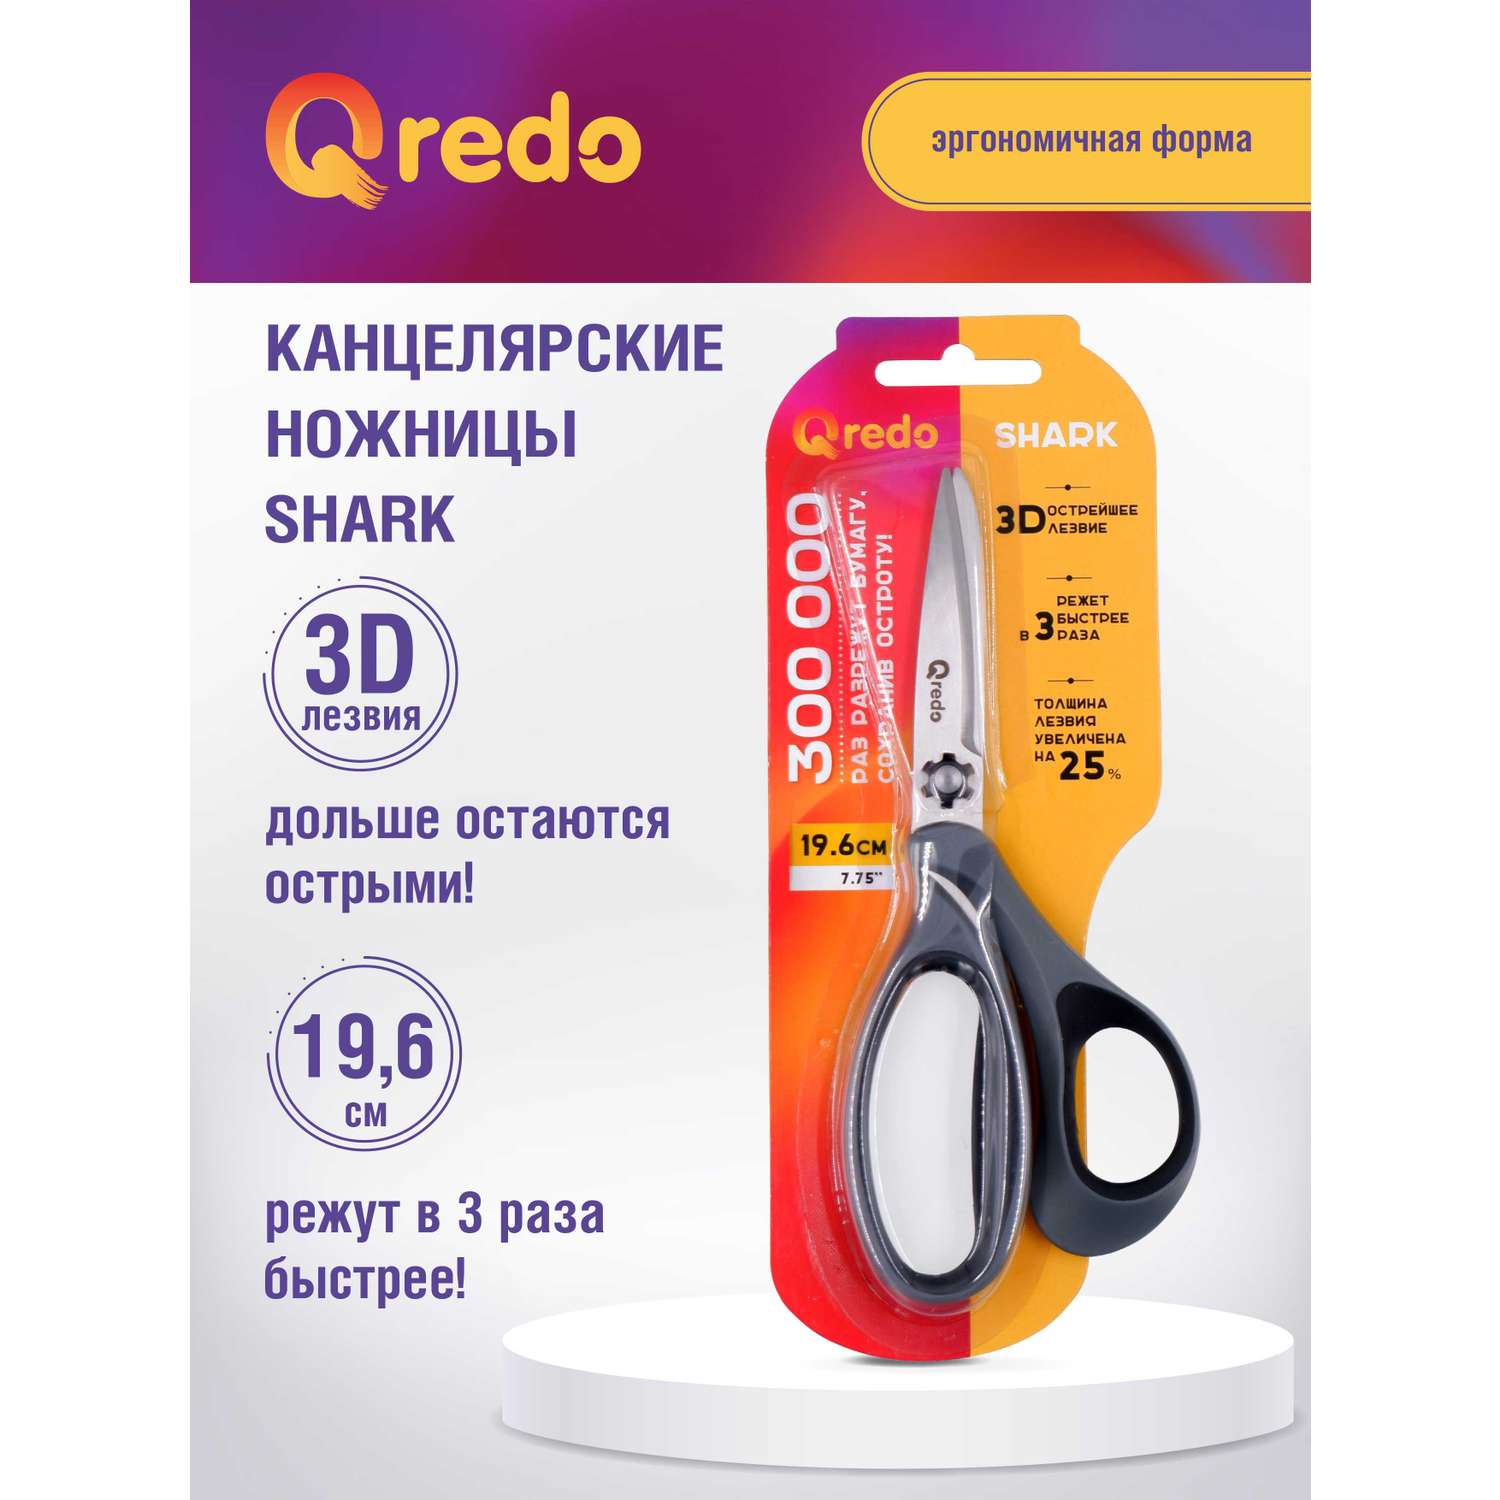 Ножницы Qredo 19 см SHARK 3D лезвие эргономичные ручки серый черный пластик прорезиненные - фото 1